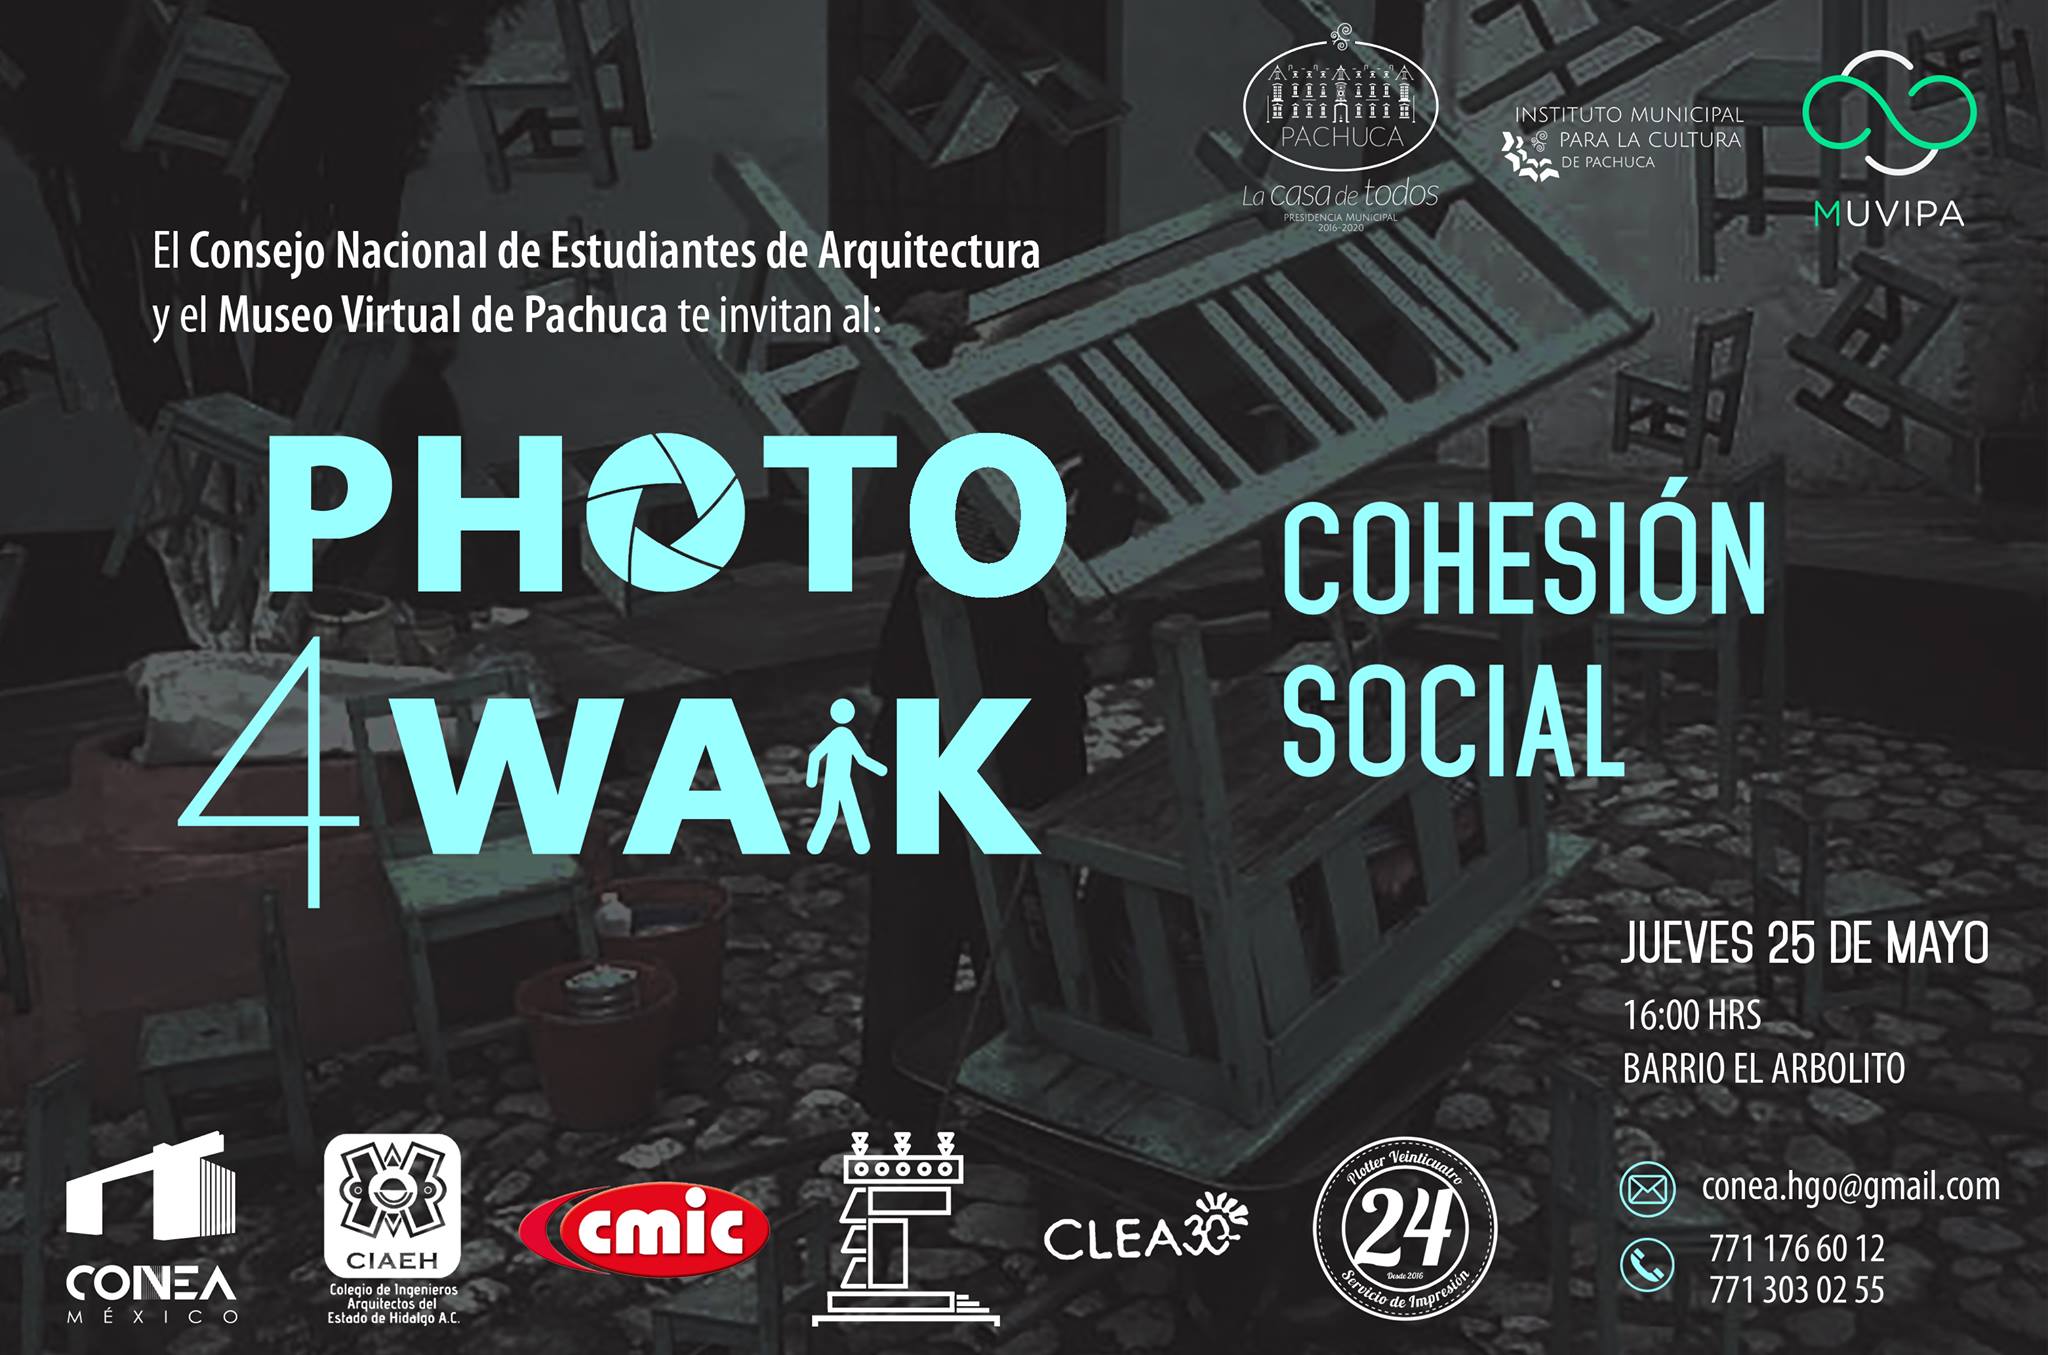 Segunda edición del Photowalk en Pachuca